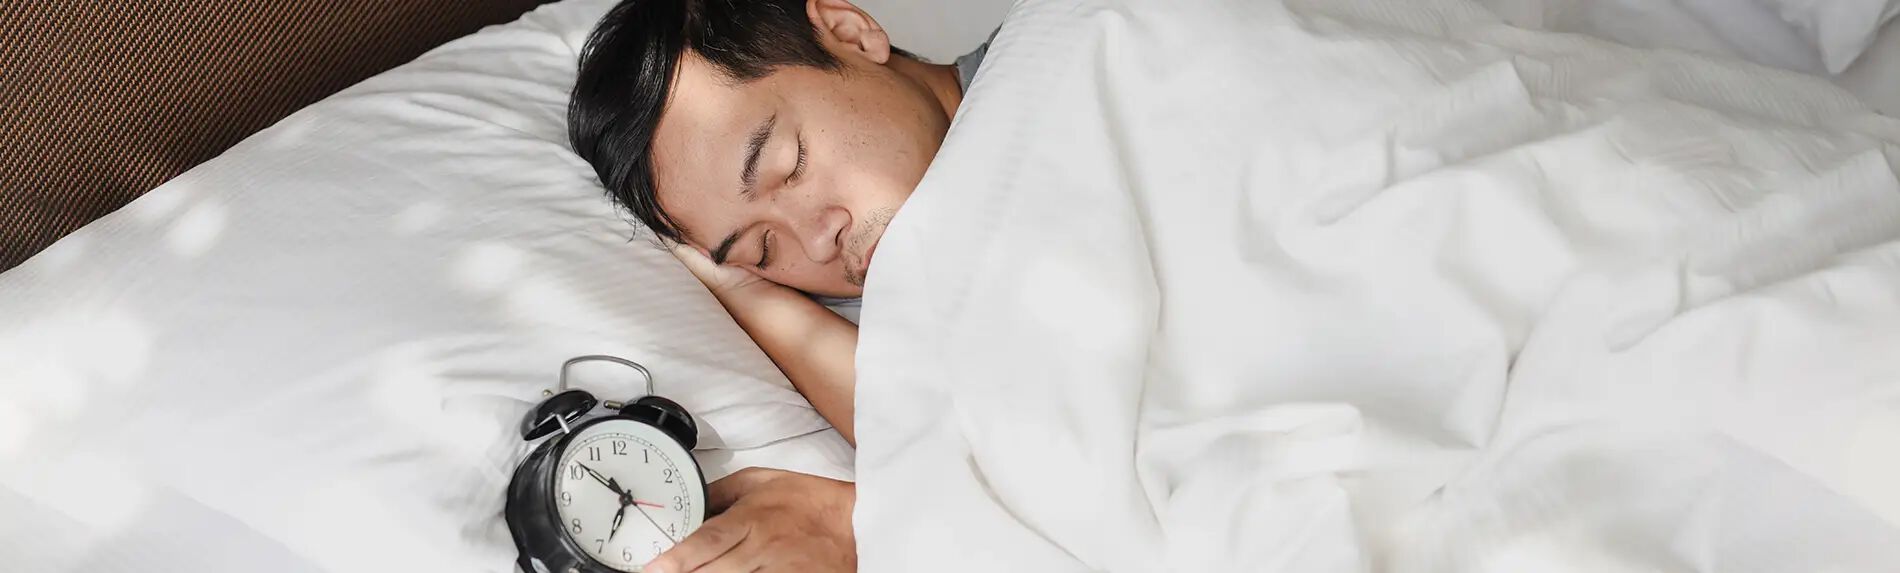 How to Stop Oversleeping?